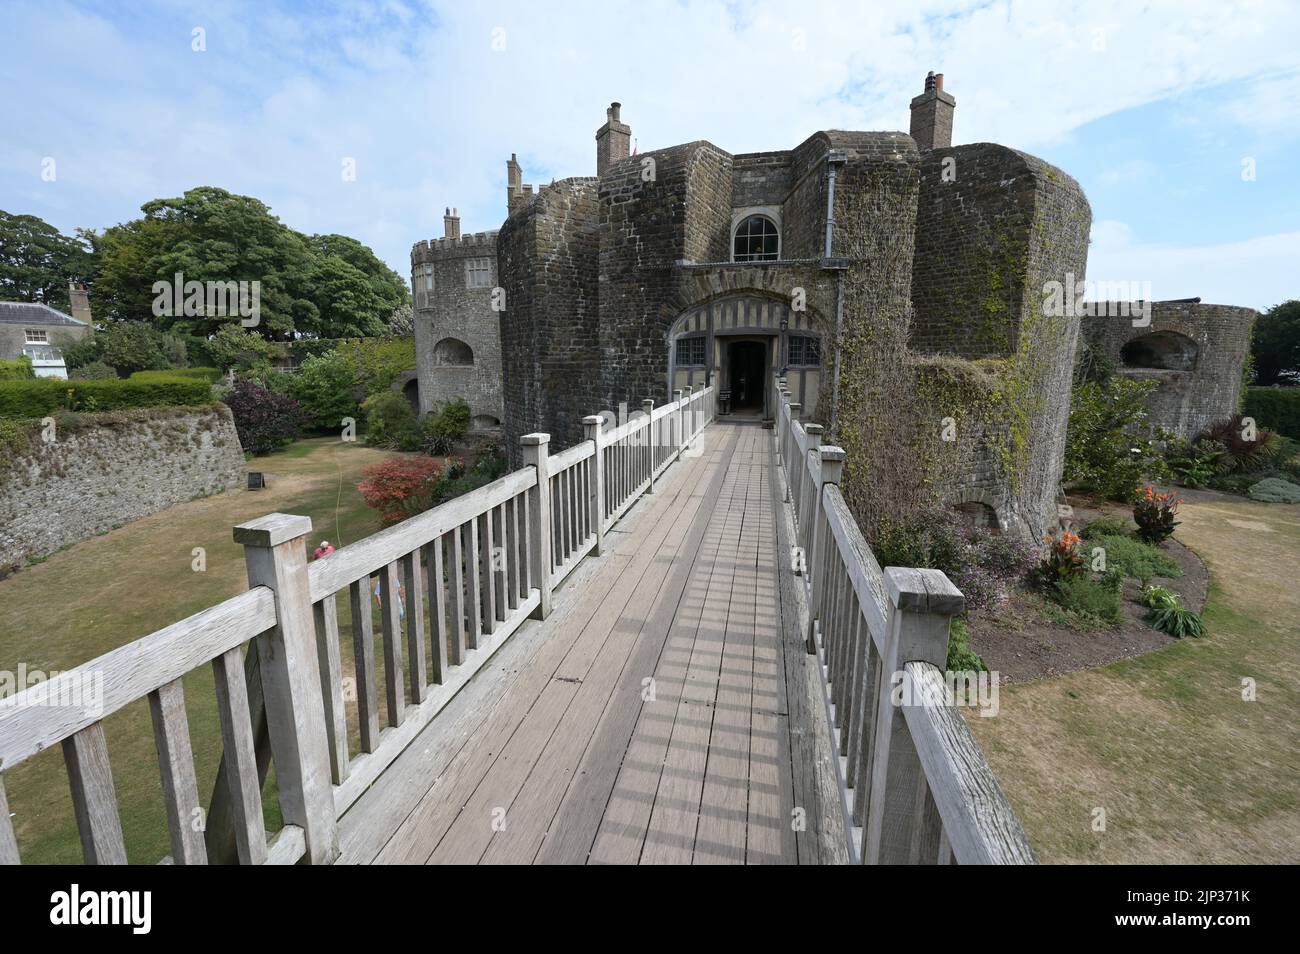 La entrada a una fortaleza costera medieval en el Reino Unido. Foto de stock